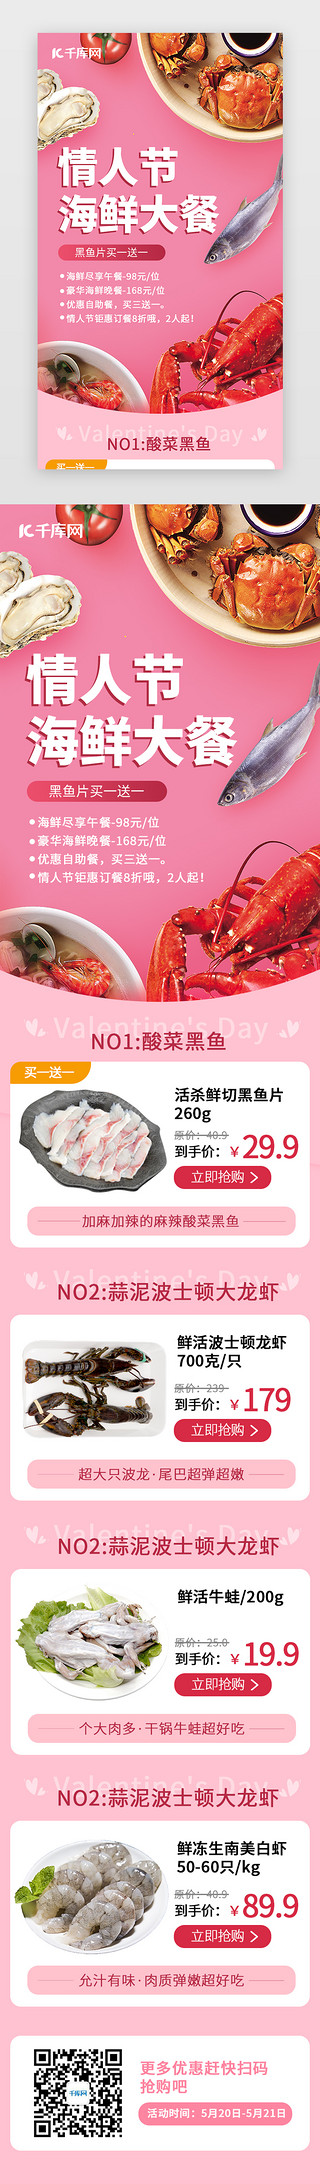 血蛤海鲜UI设计素材_情人节海鲜大餐H5